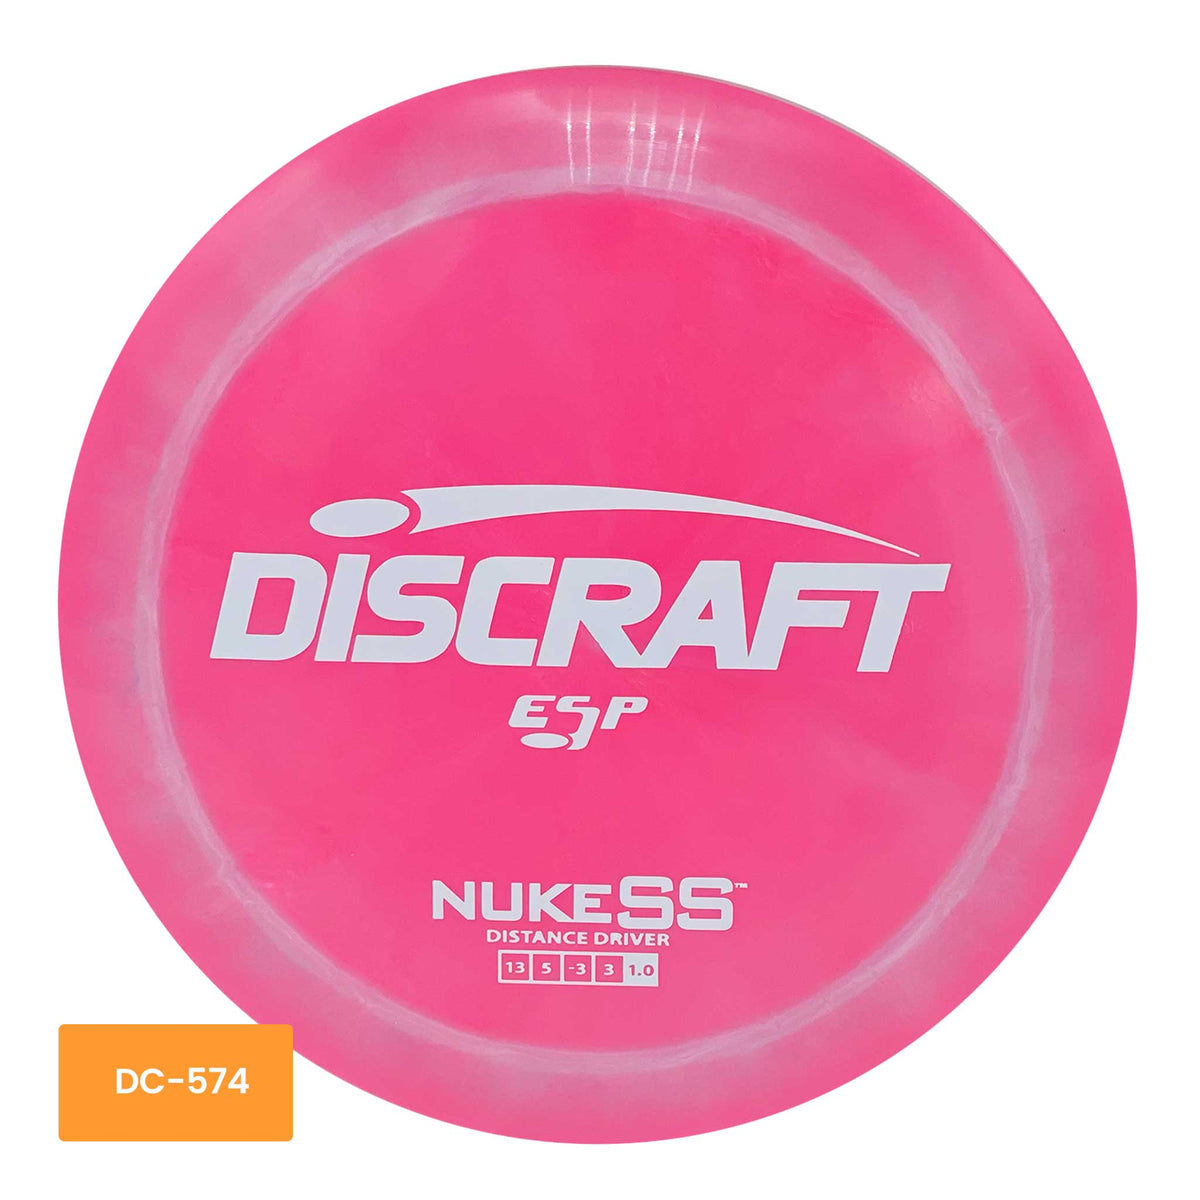 Discraft ESP Nuke SS distance driver - Pink